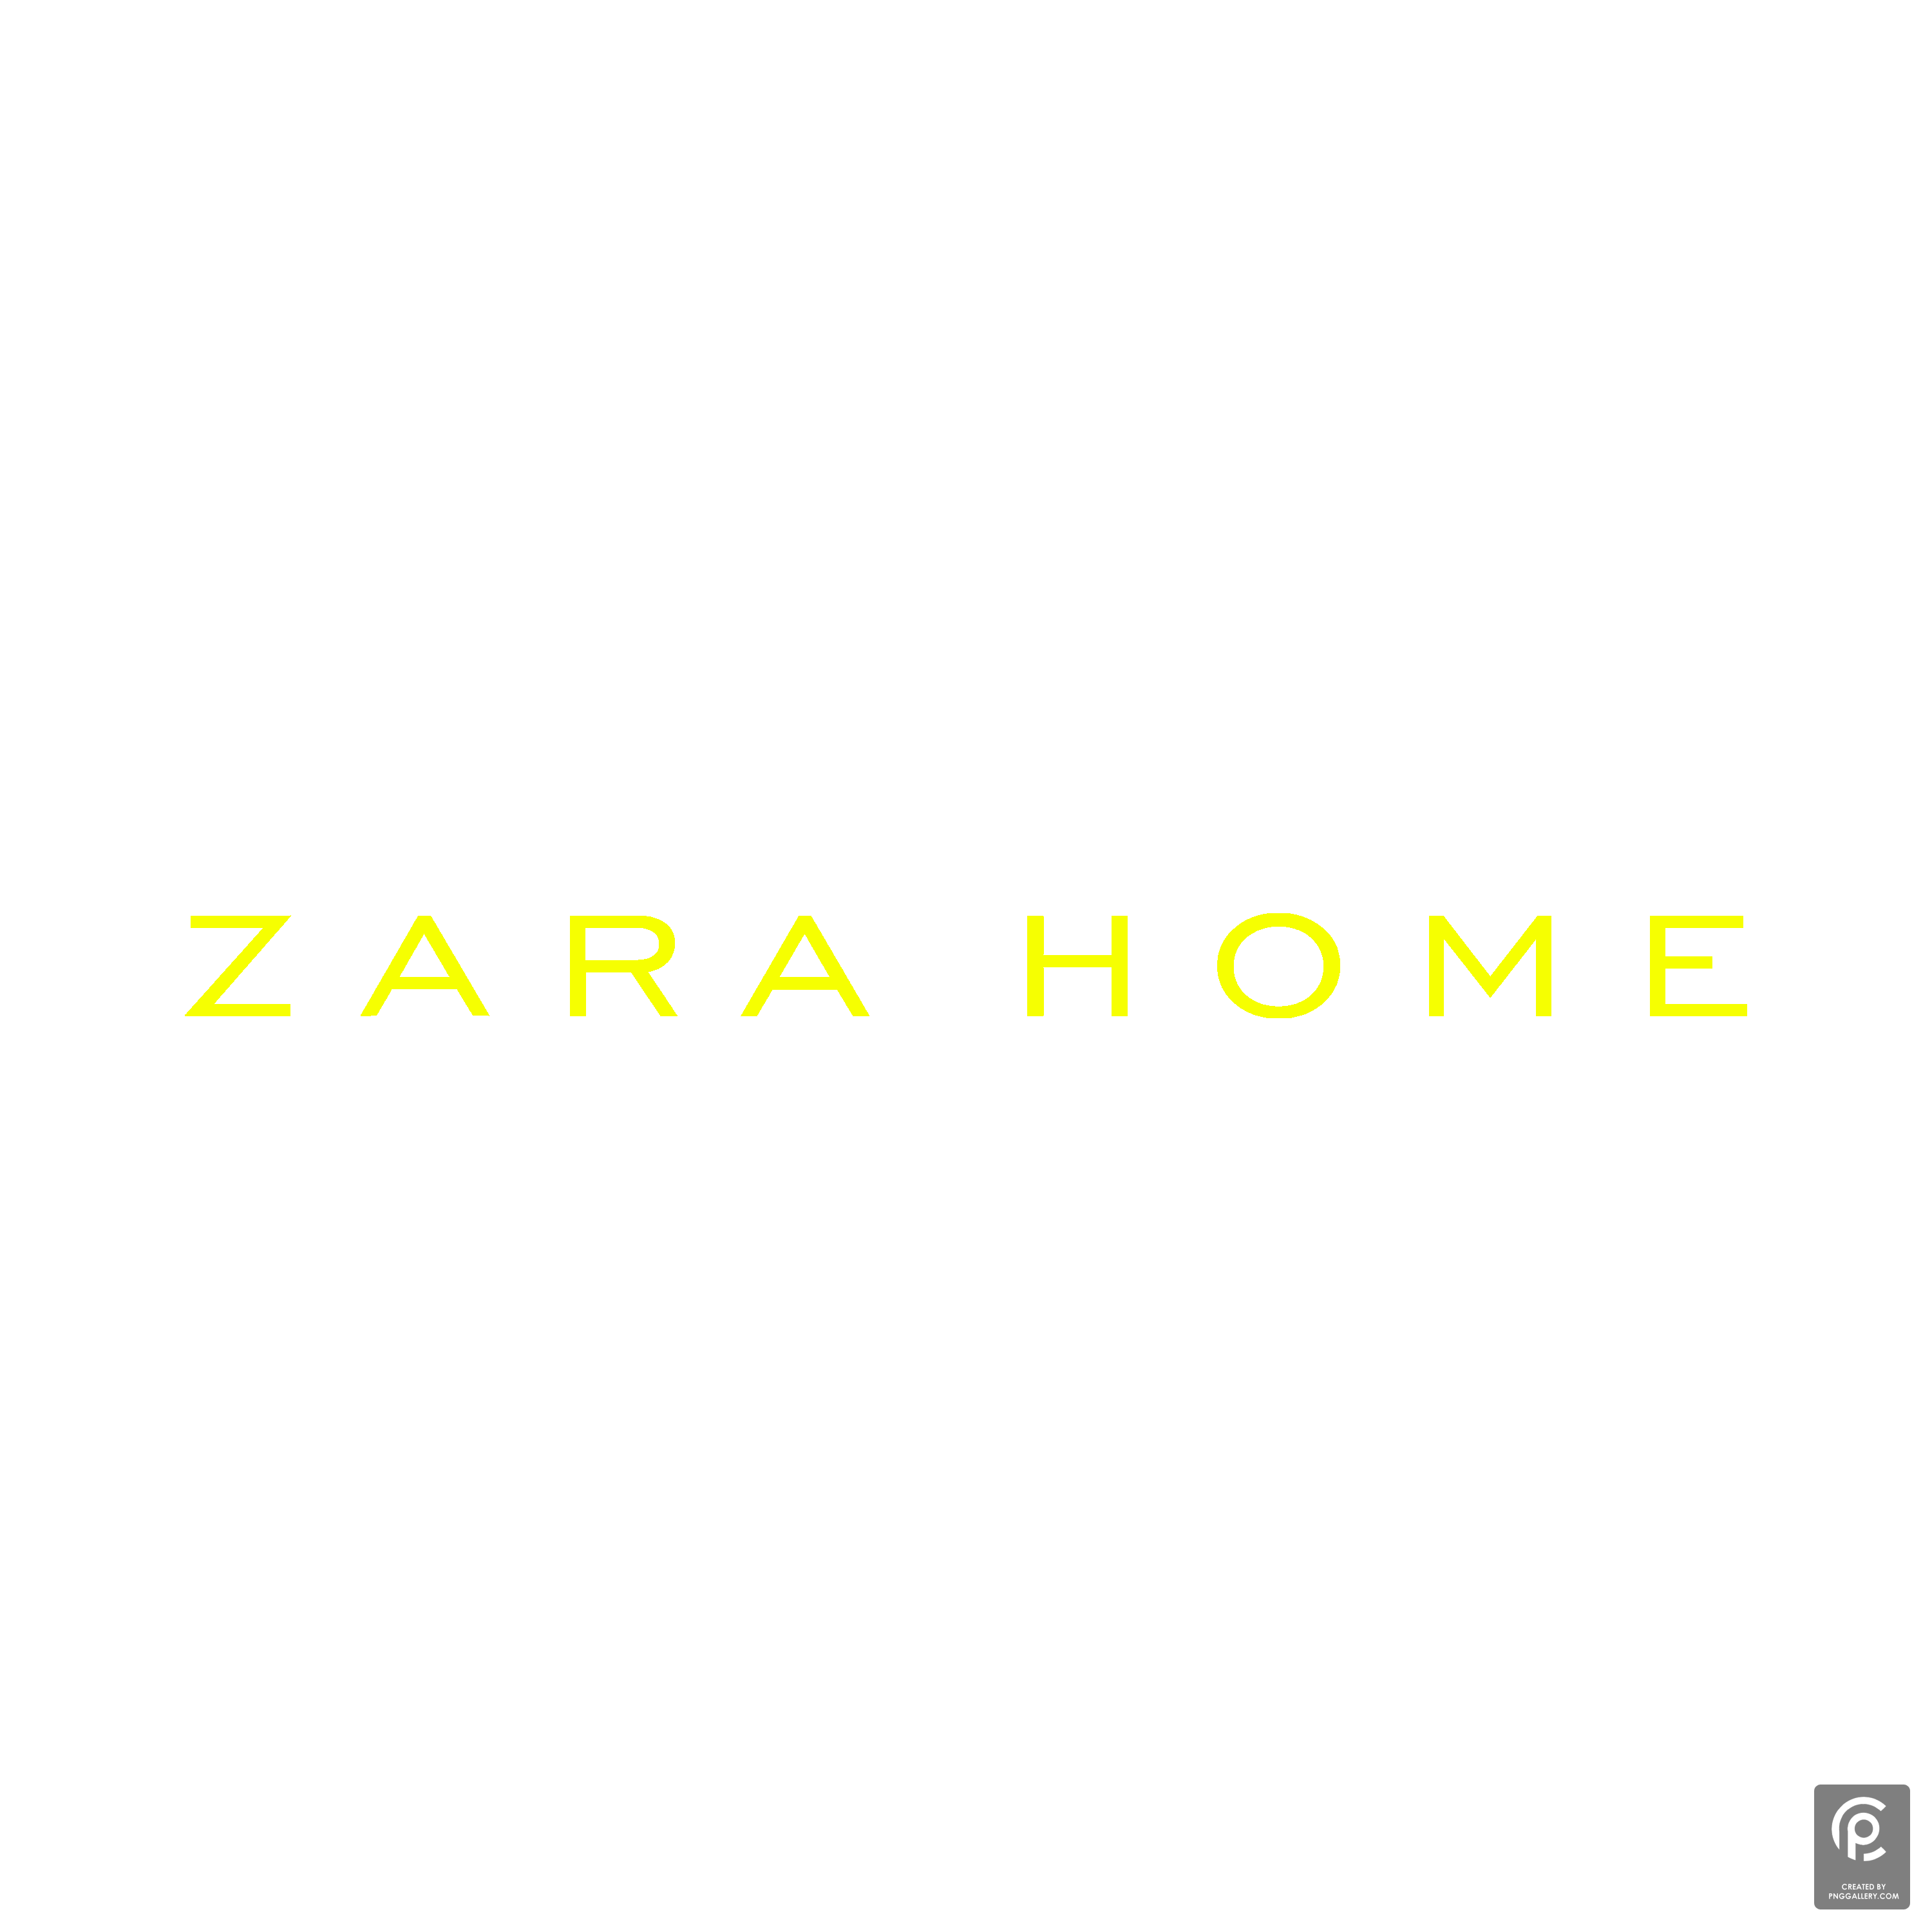 Zara Home Logo Transparent Gallery